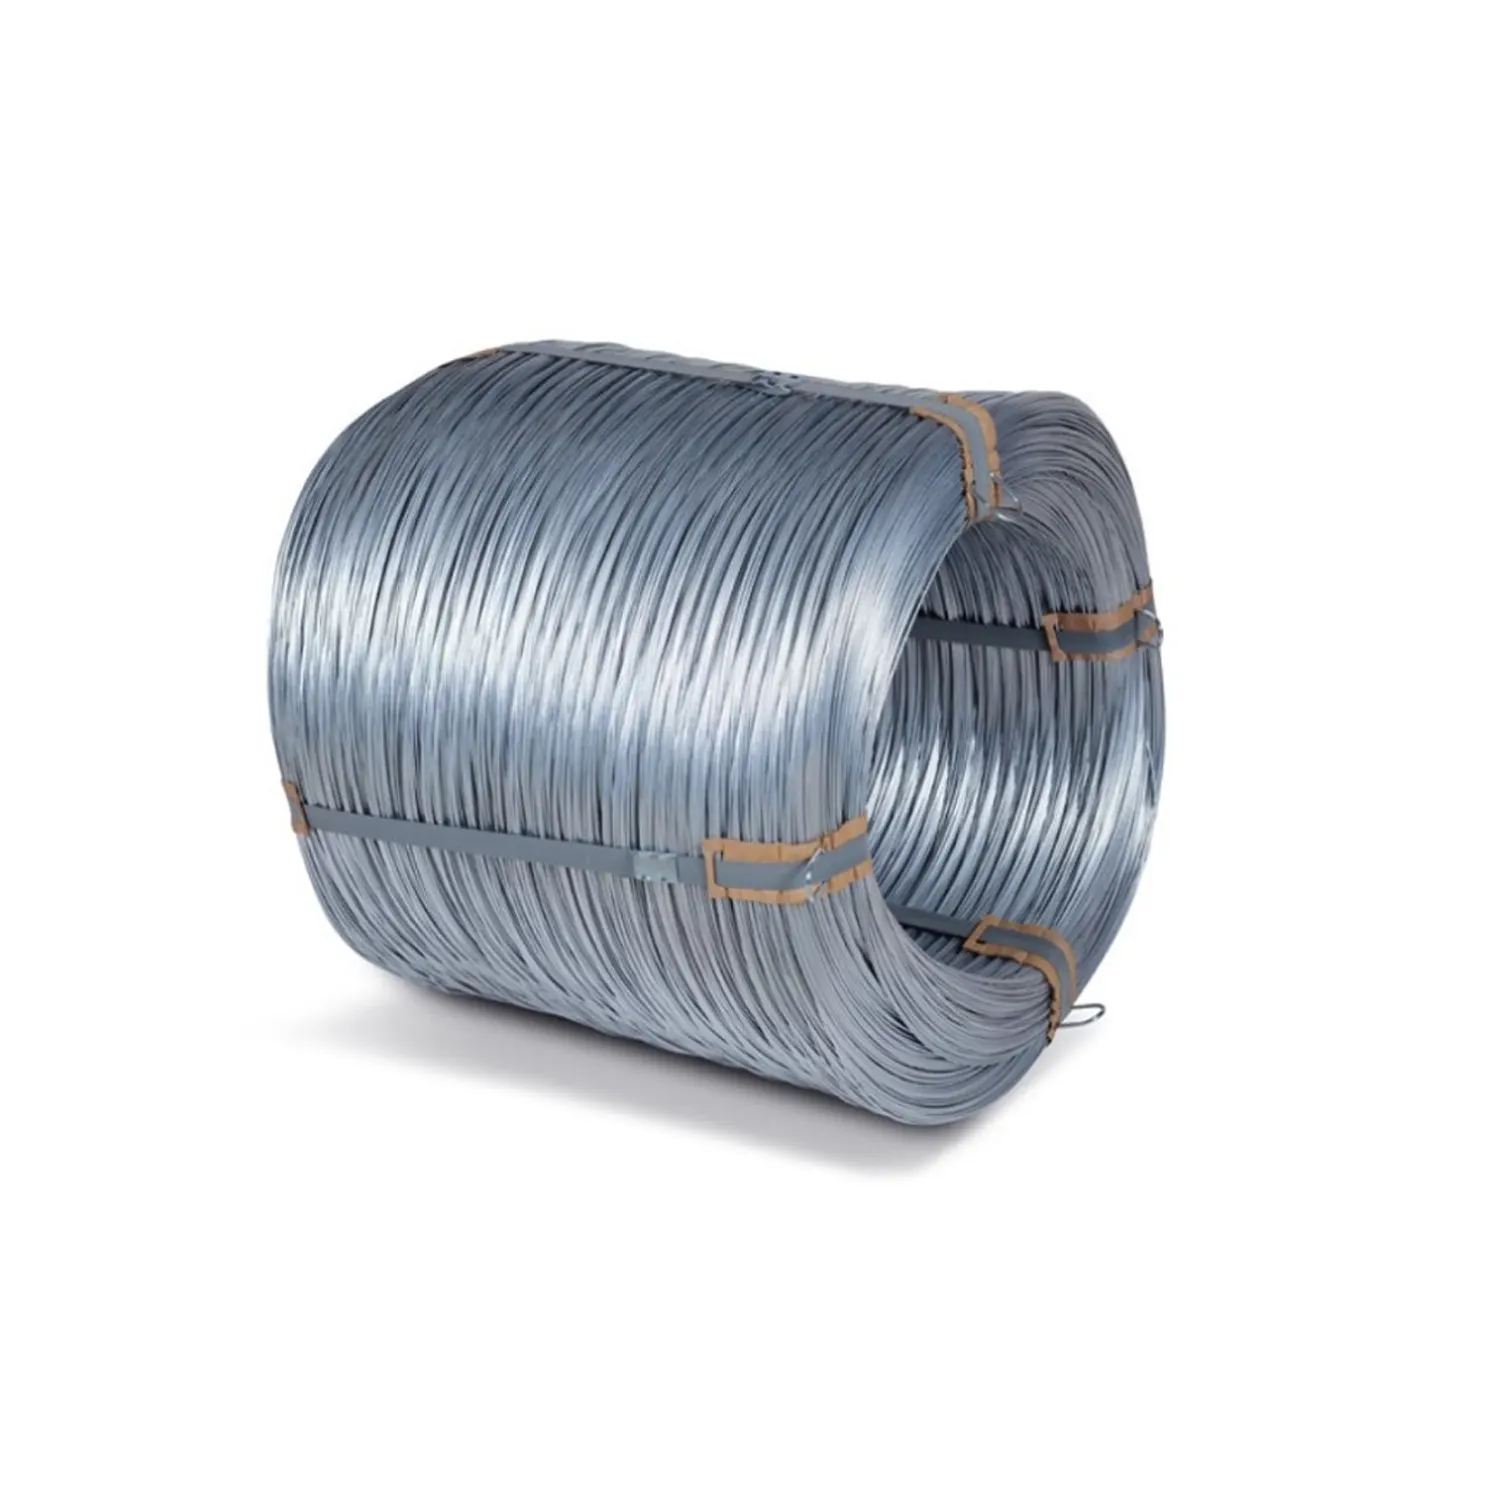 Vendita diretta in fabbrica filo di ferro zincato alambre galvanizzato calibro 12 filo morbido gi filo di ferro zincato a caldo